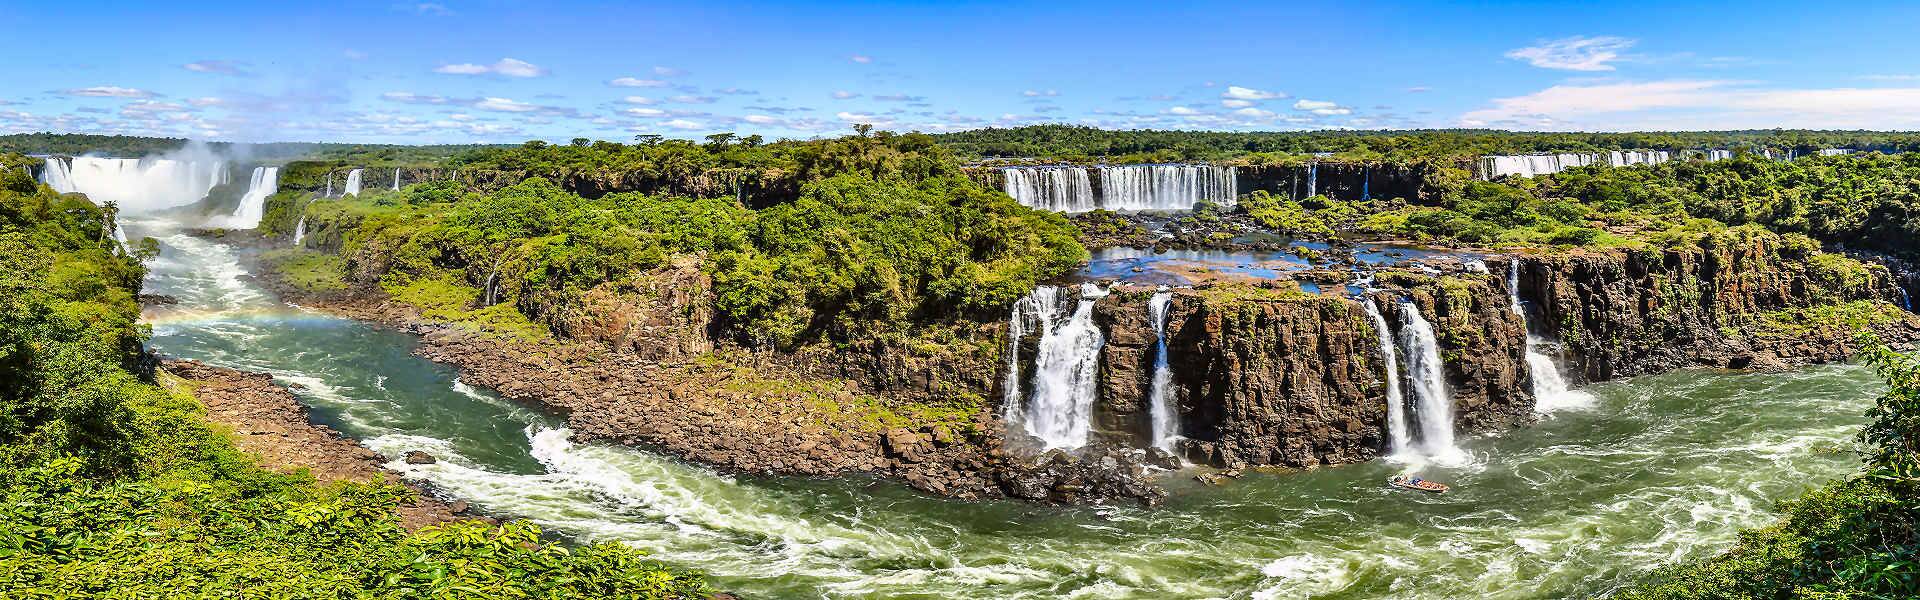 Eine Rundreise durch Südamerika mit den Iguazu Wasserfällen als Höhepunkt.